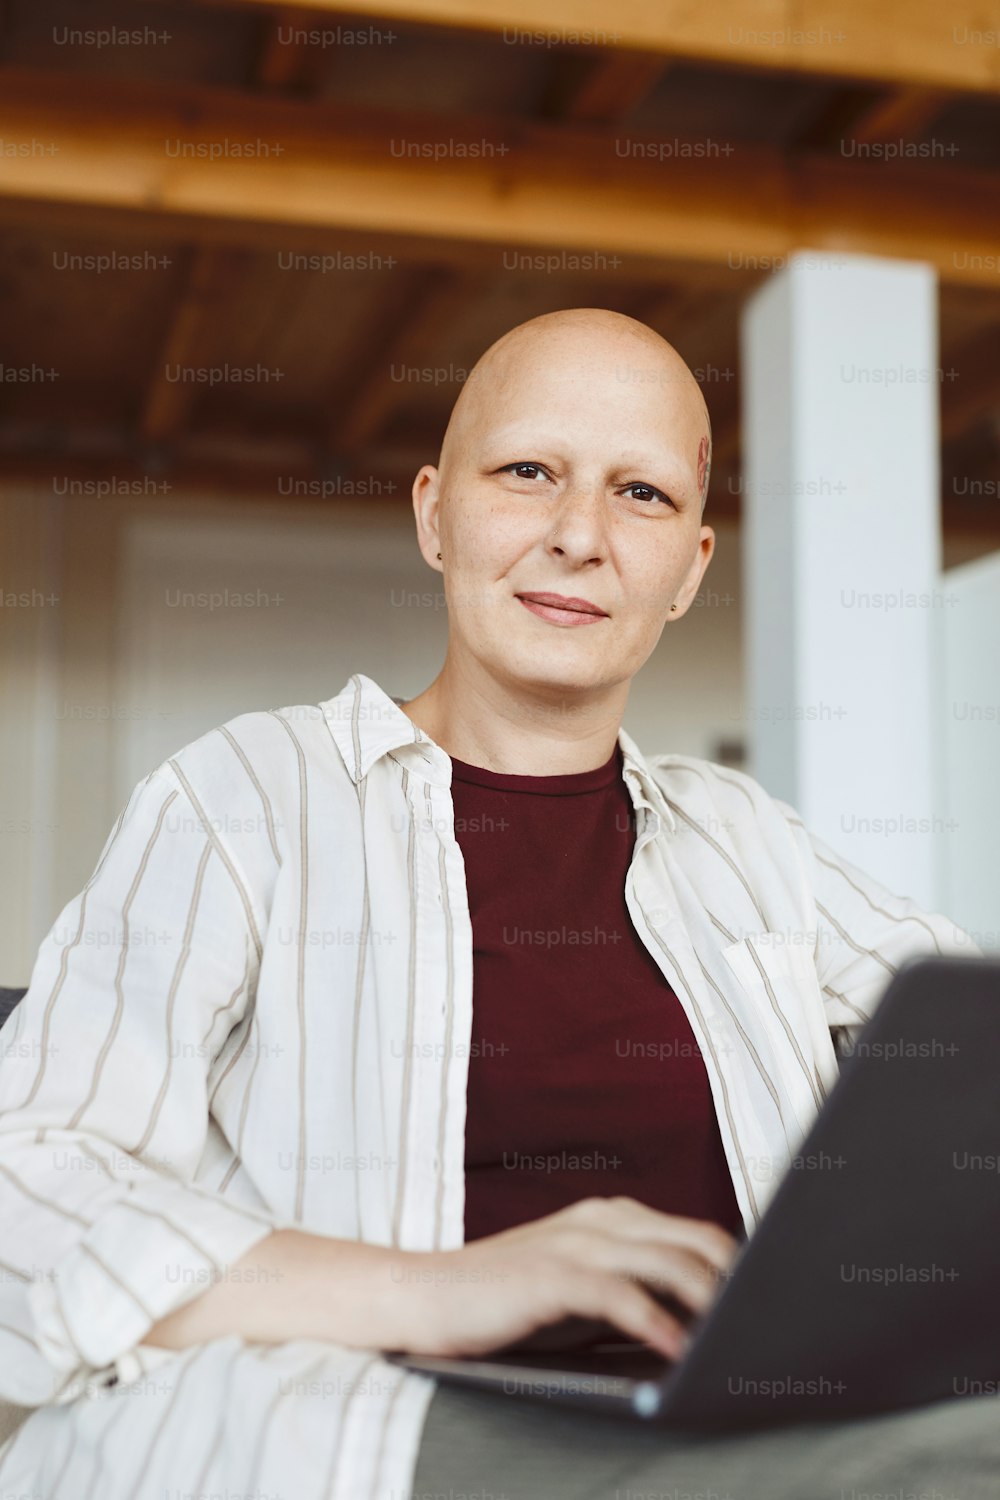 禿げた成人女性がカメラに向かって微笑み、ノートパソコンを持ち、現代のインテリア、脱毛症、癌の意識で自宅で仕事をしている縦のポートレート